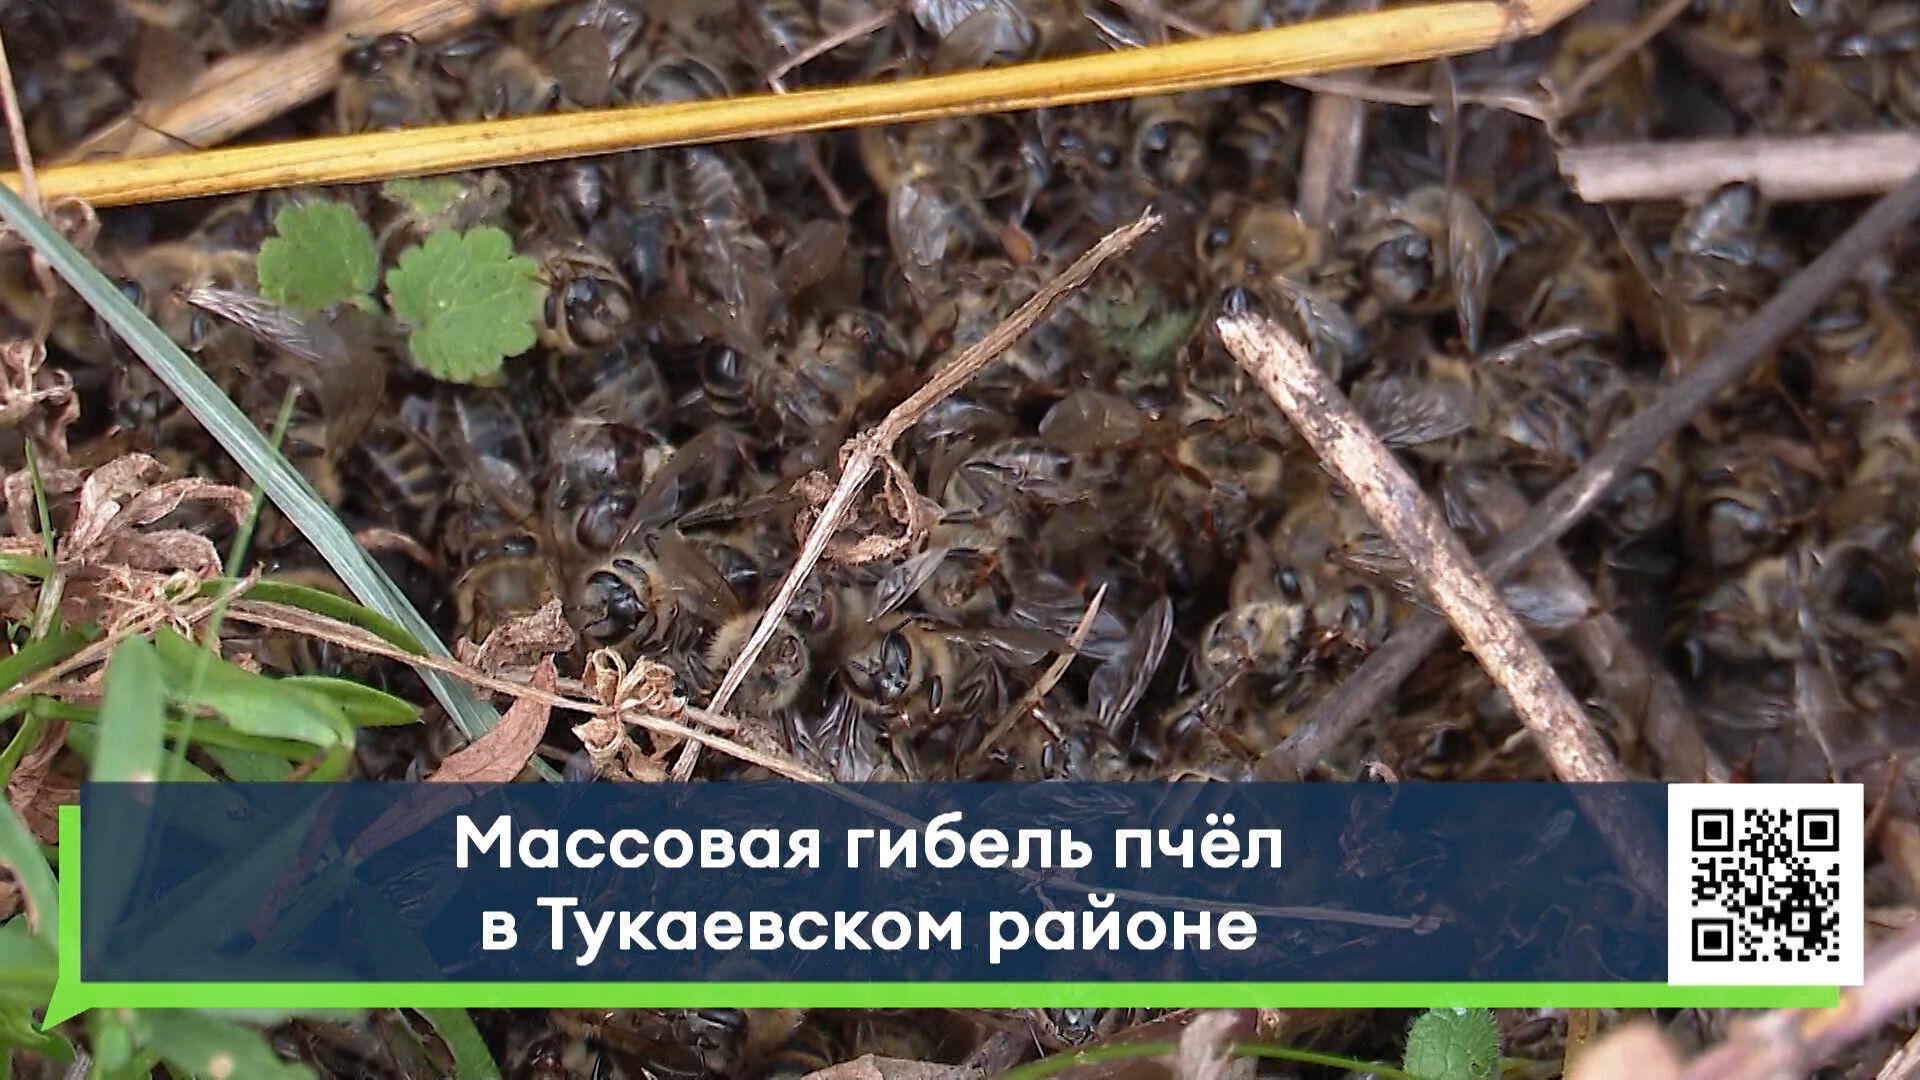 В&nbsp;Тукаевском районе зафиксирована массовая гибель пчёл